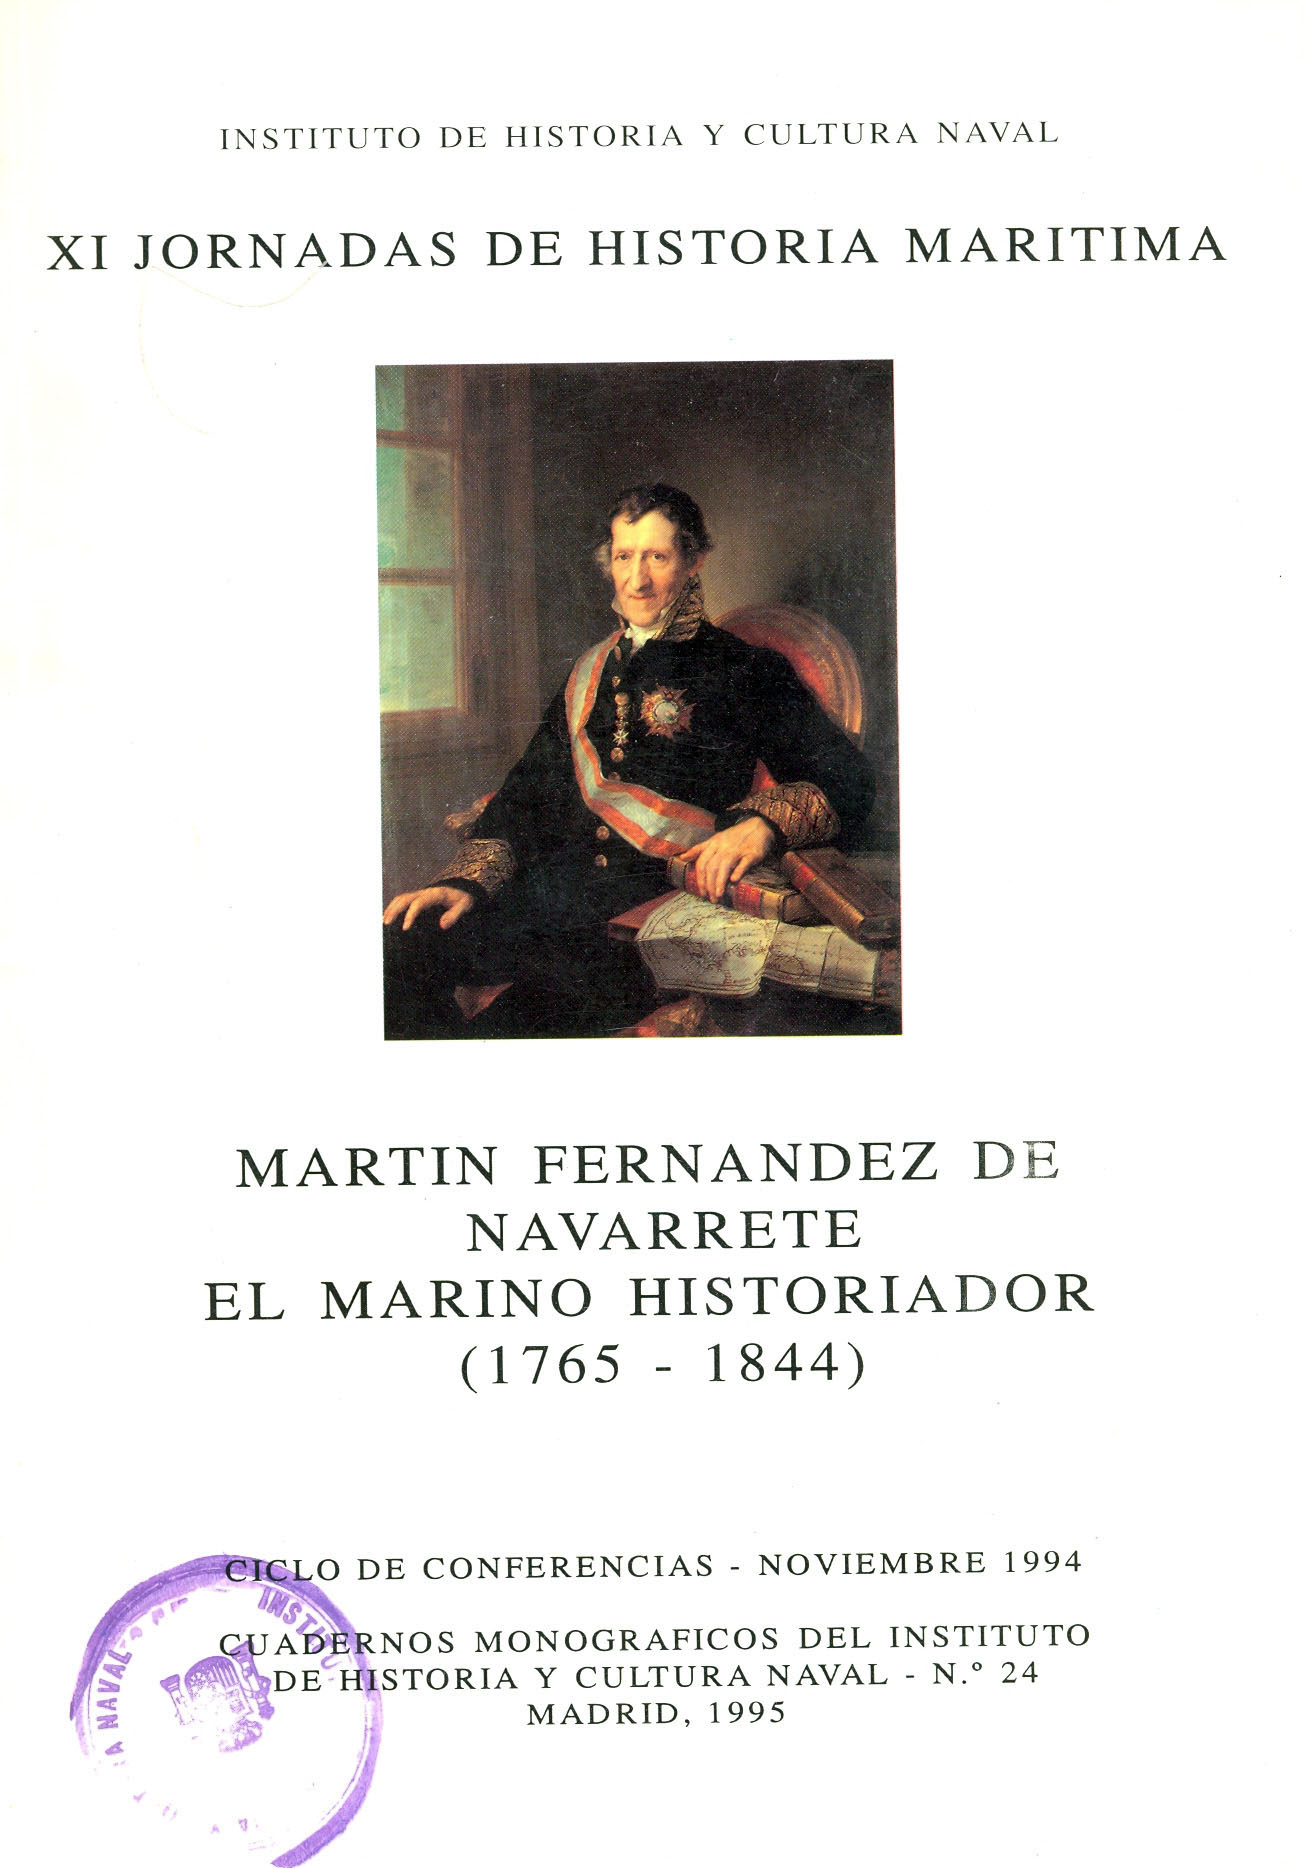 Martín Fernández de Navarrete, el marino historiador (1765 - 1844)